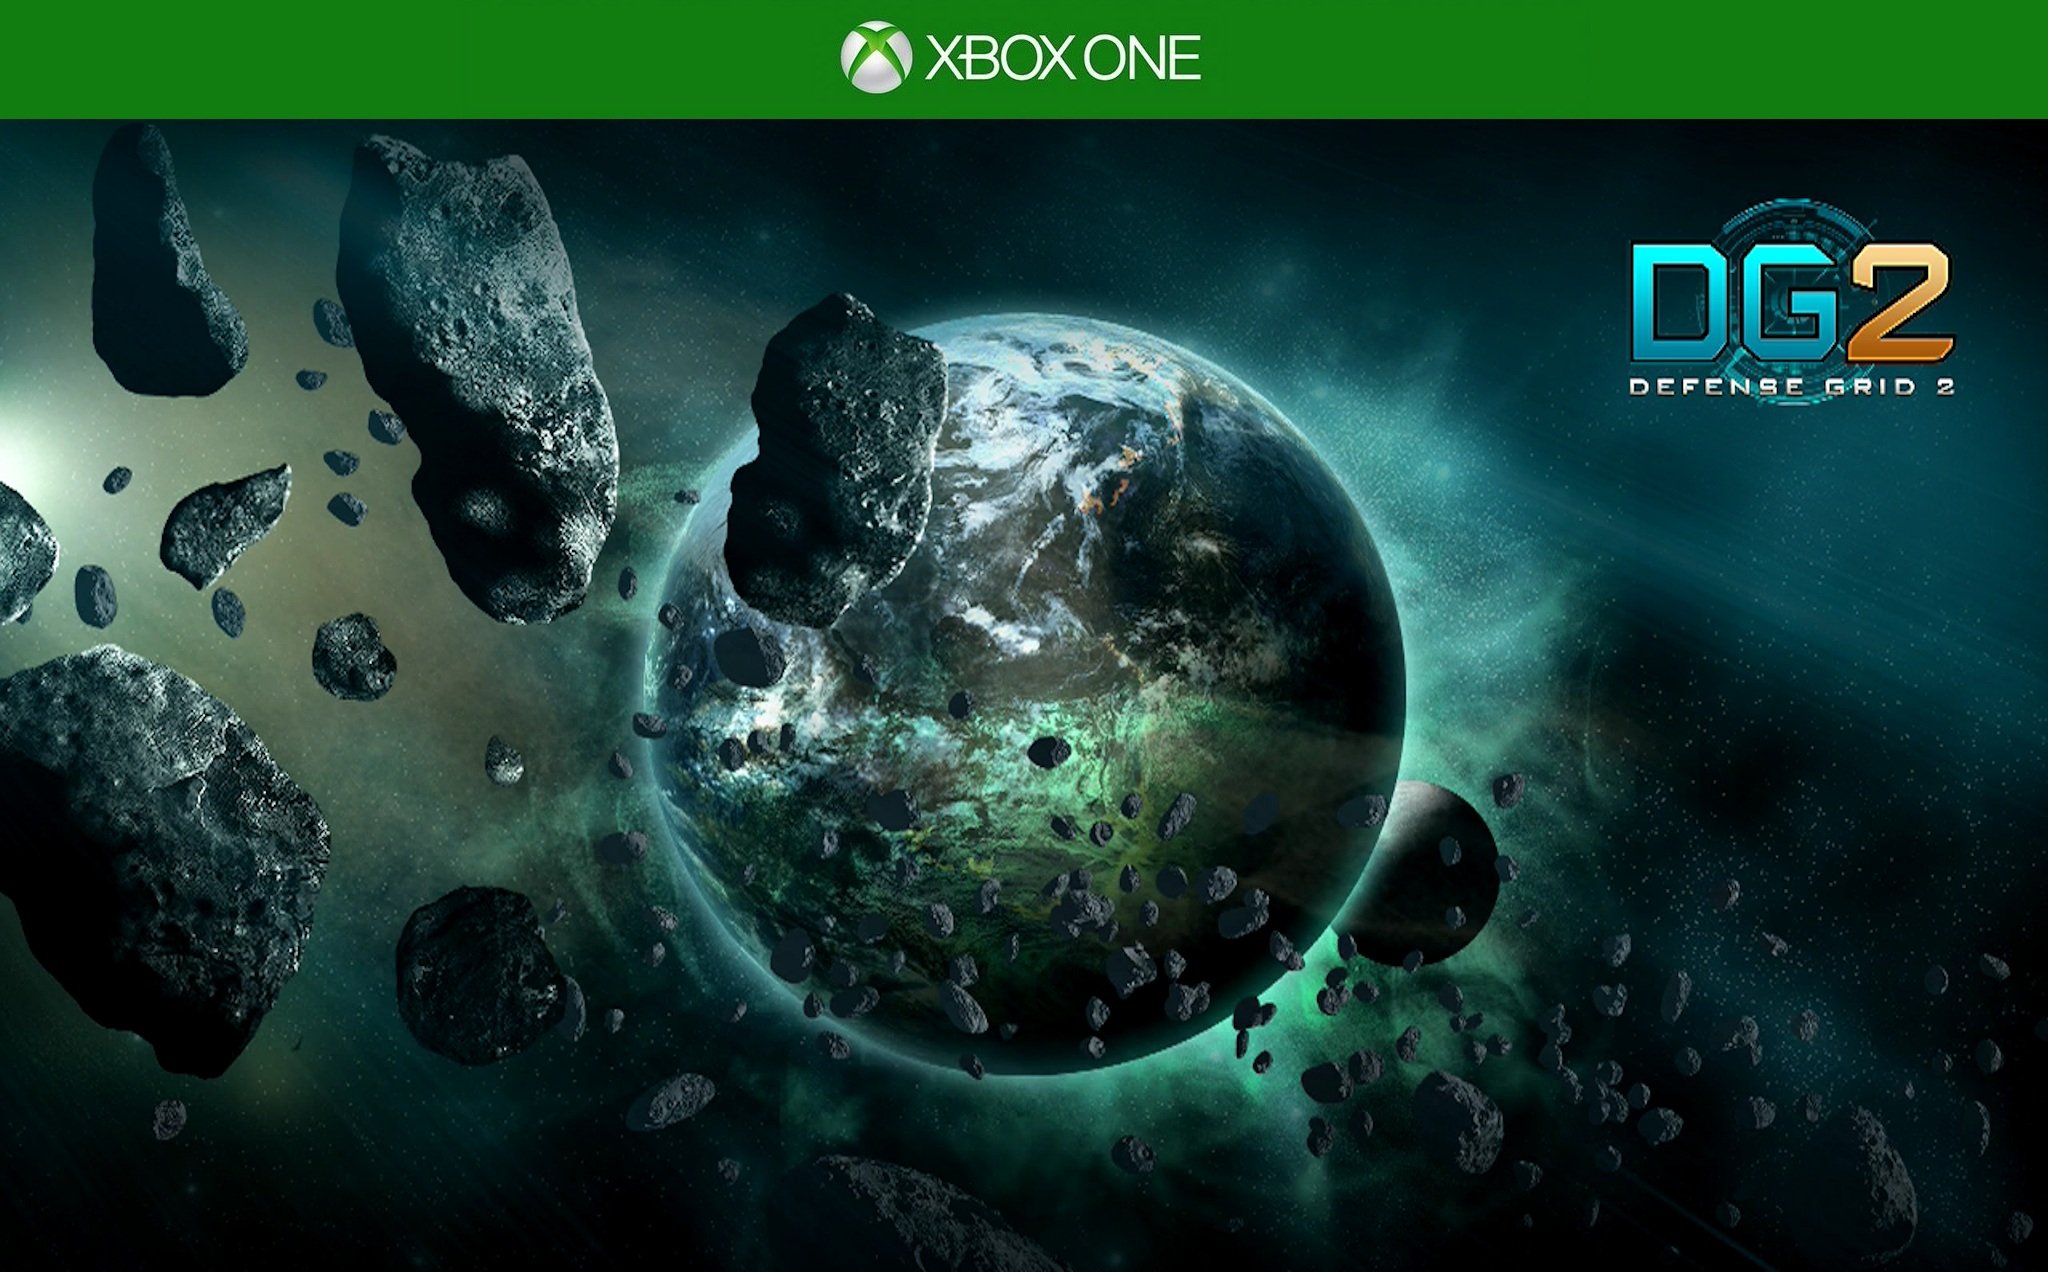 GRID - Xbox One, Xbox One